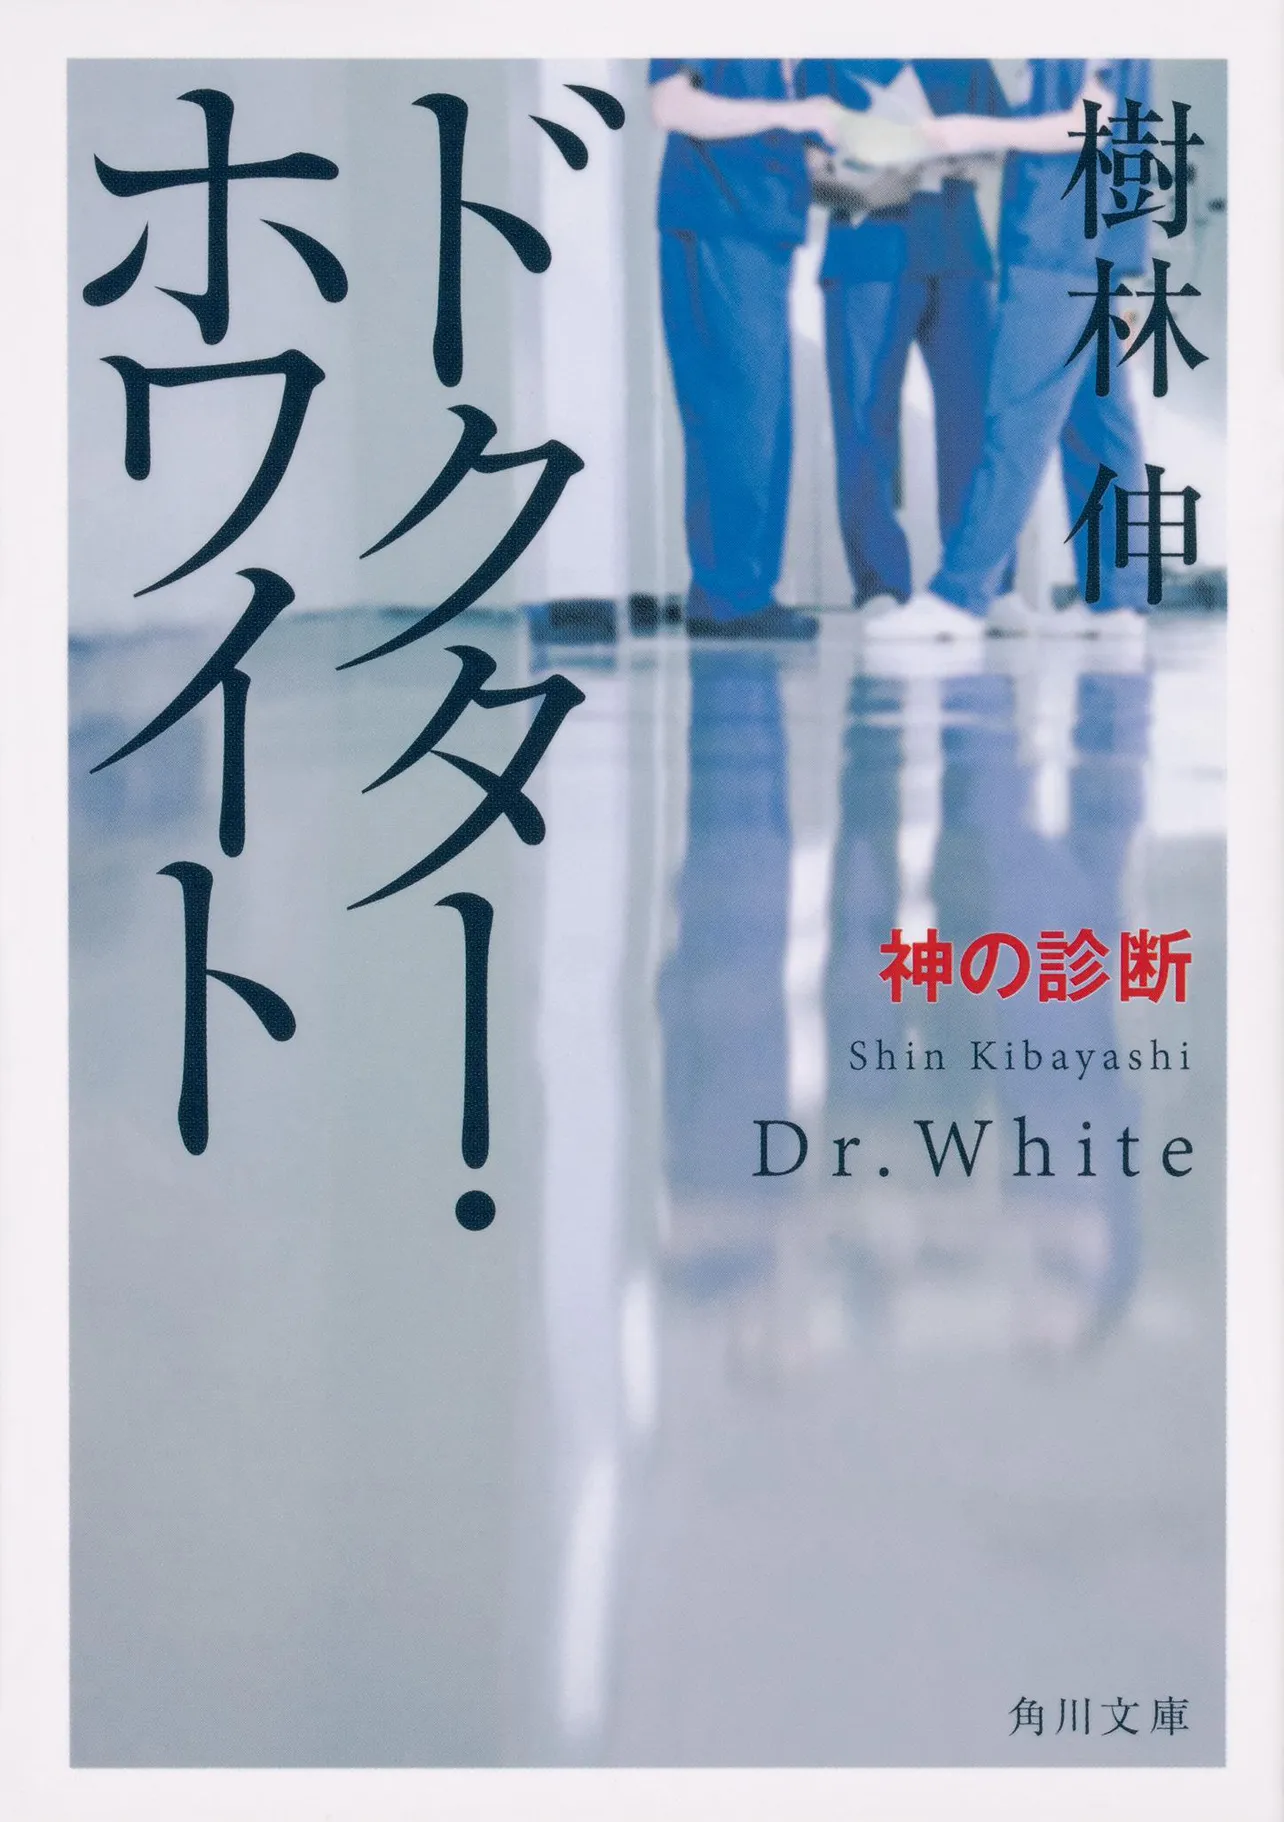 「ドクター・ホワイト 神の診断」書影